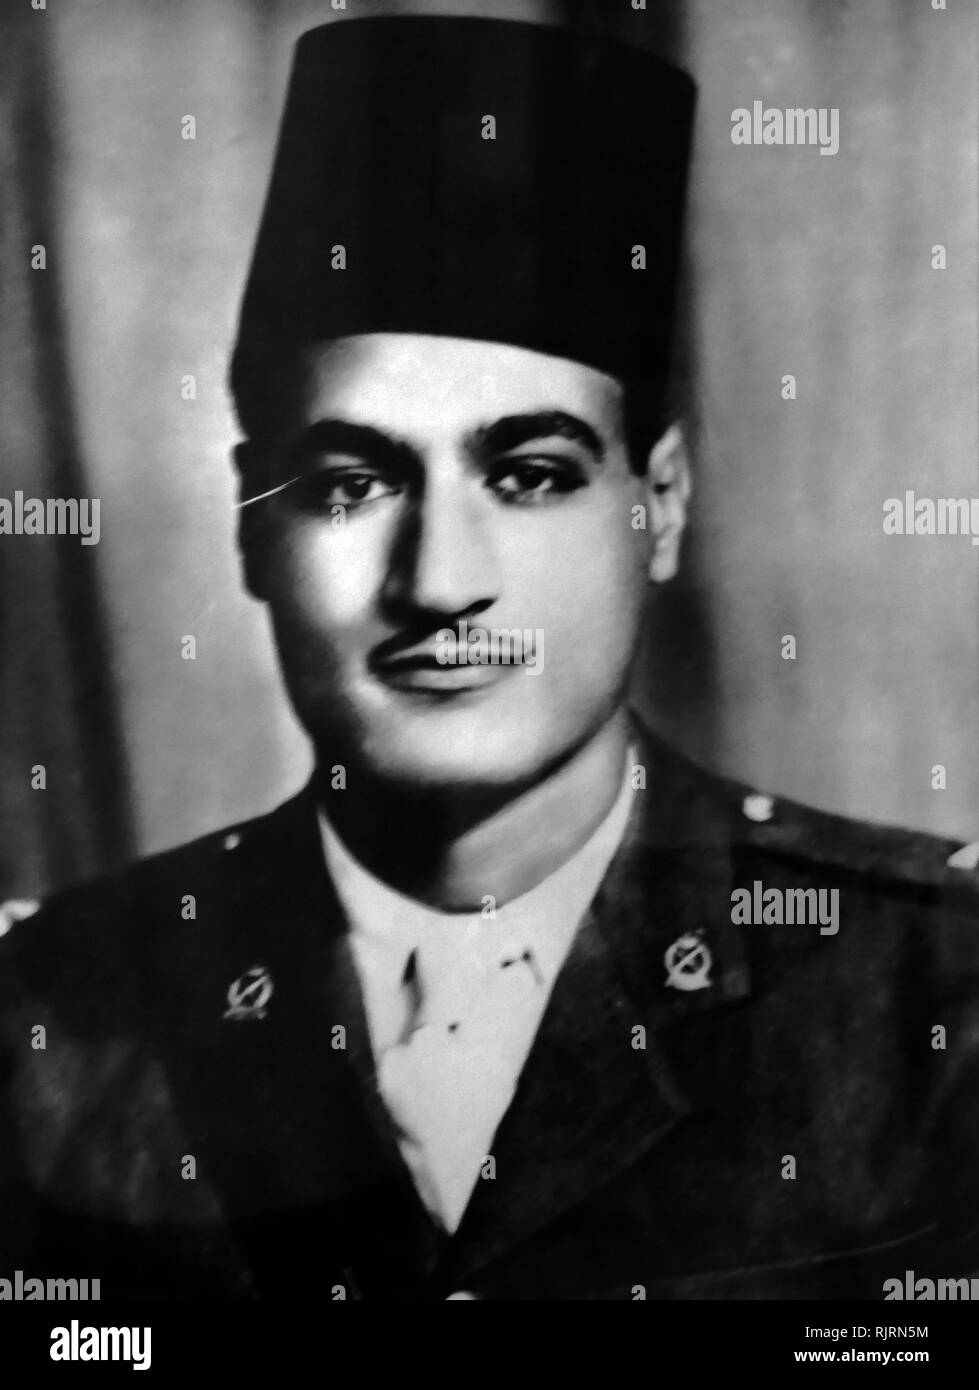 Gamal Abdel Nasser, comme un jeune officier vers 1940. Nasser a été président de l'Égypte, à partir de 1956 jusqu'à sa mort en 1970. Nasser a dirigé le renversement de la monarchie en 1952 et a introduit des réformes foncières l'année suivante Banque D'Images